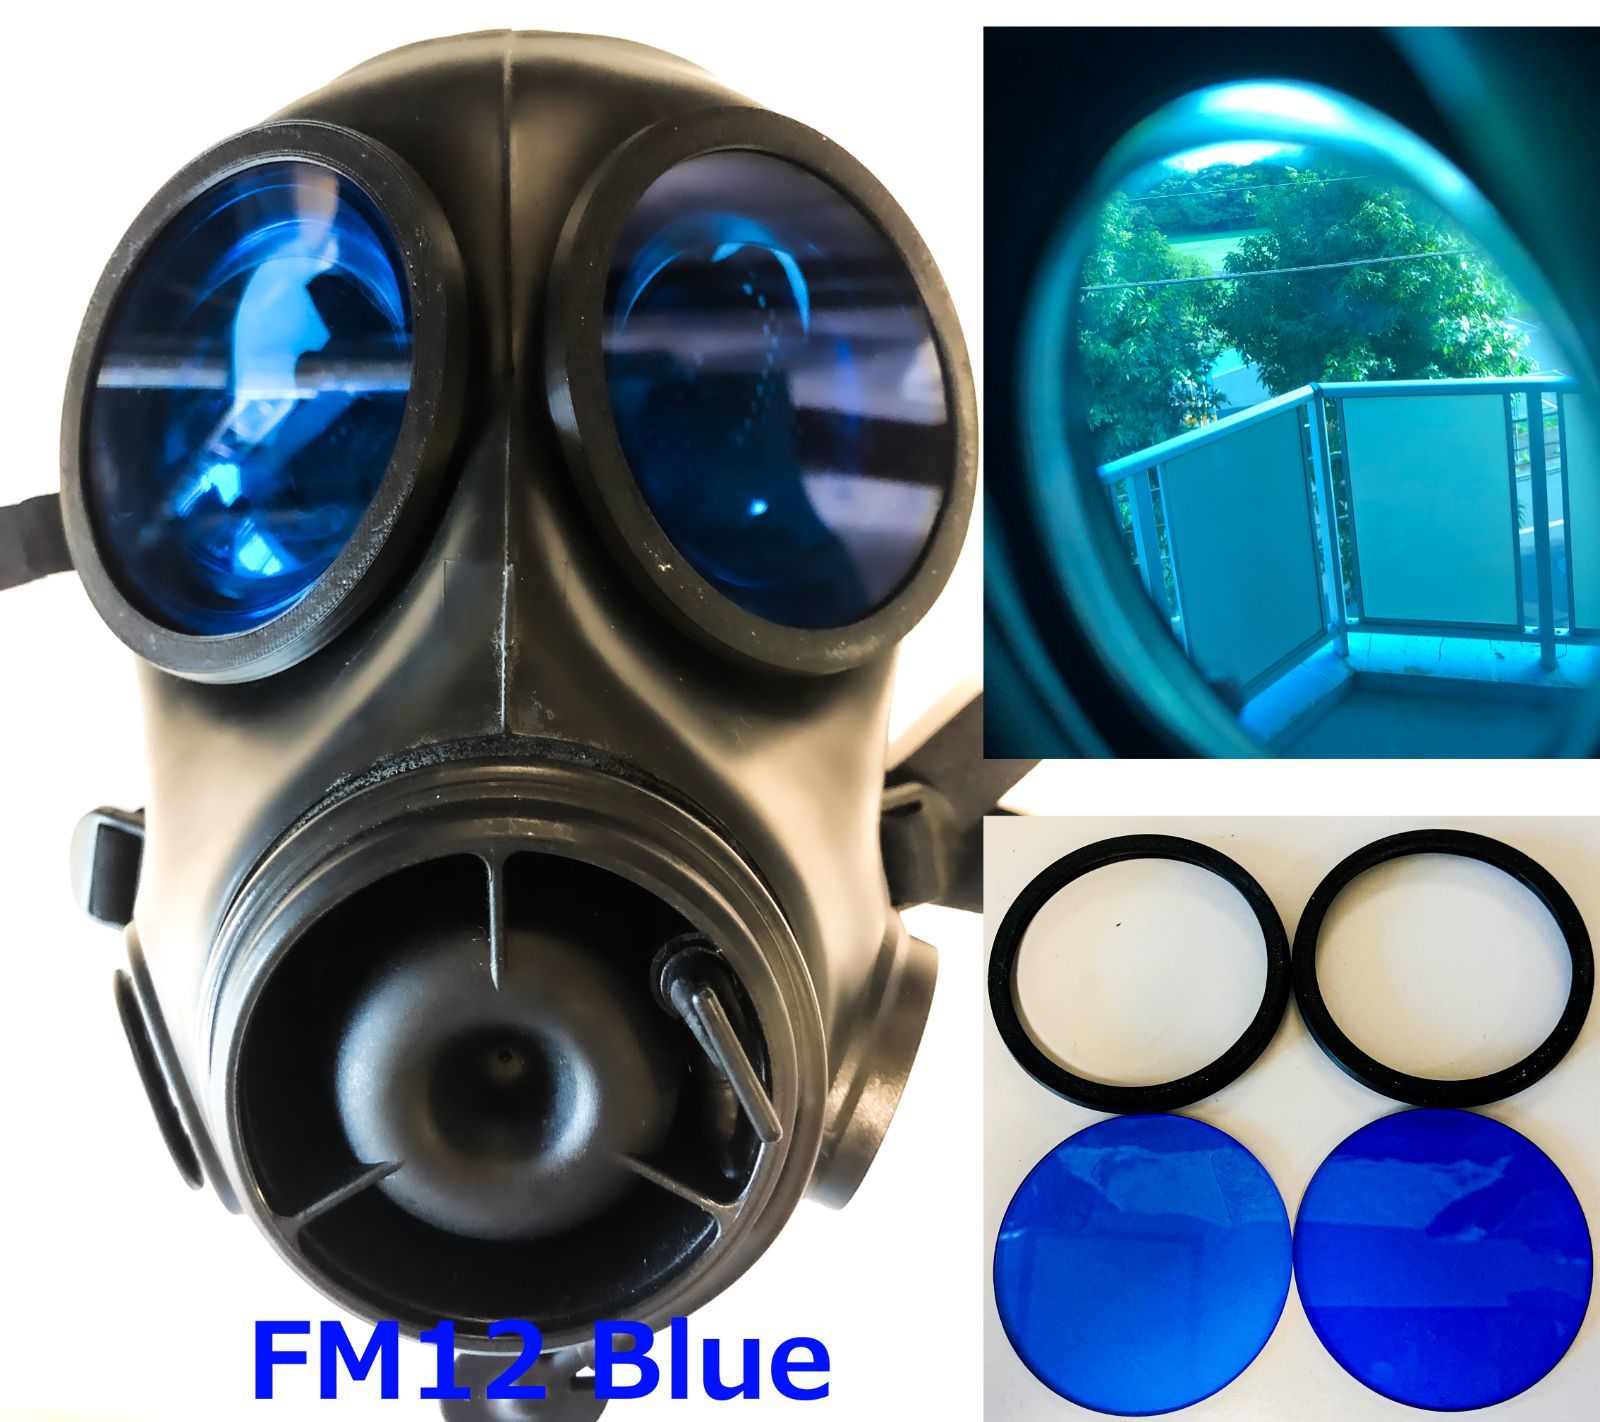 FM12 ガスマスク レンズ付き - 個人装備